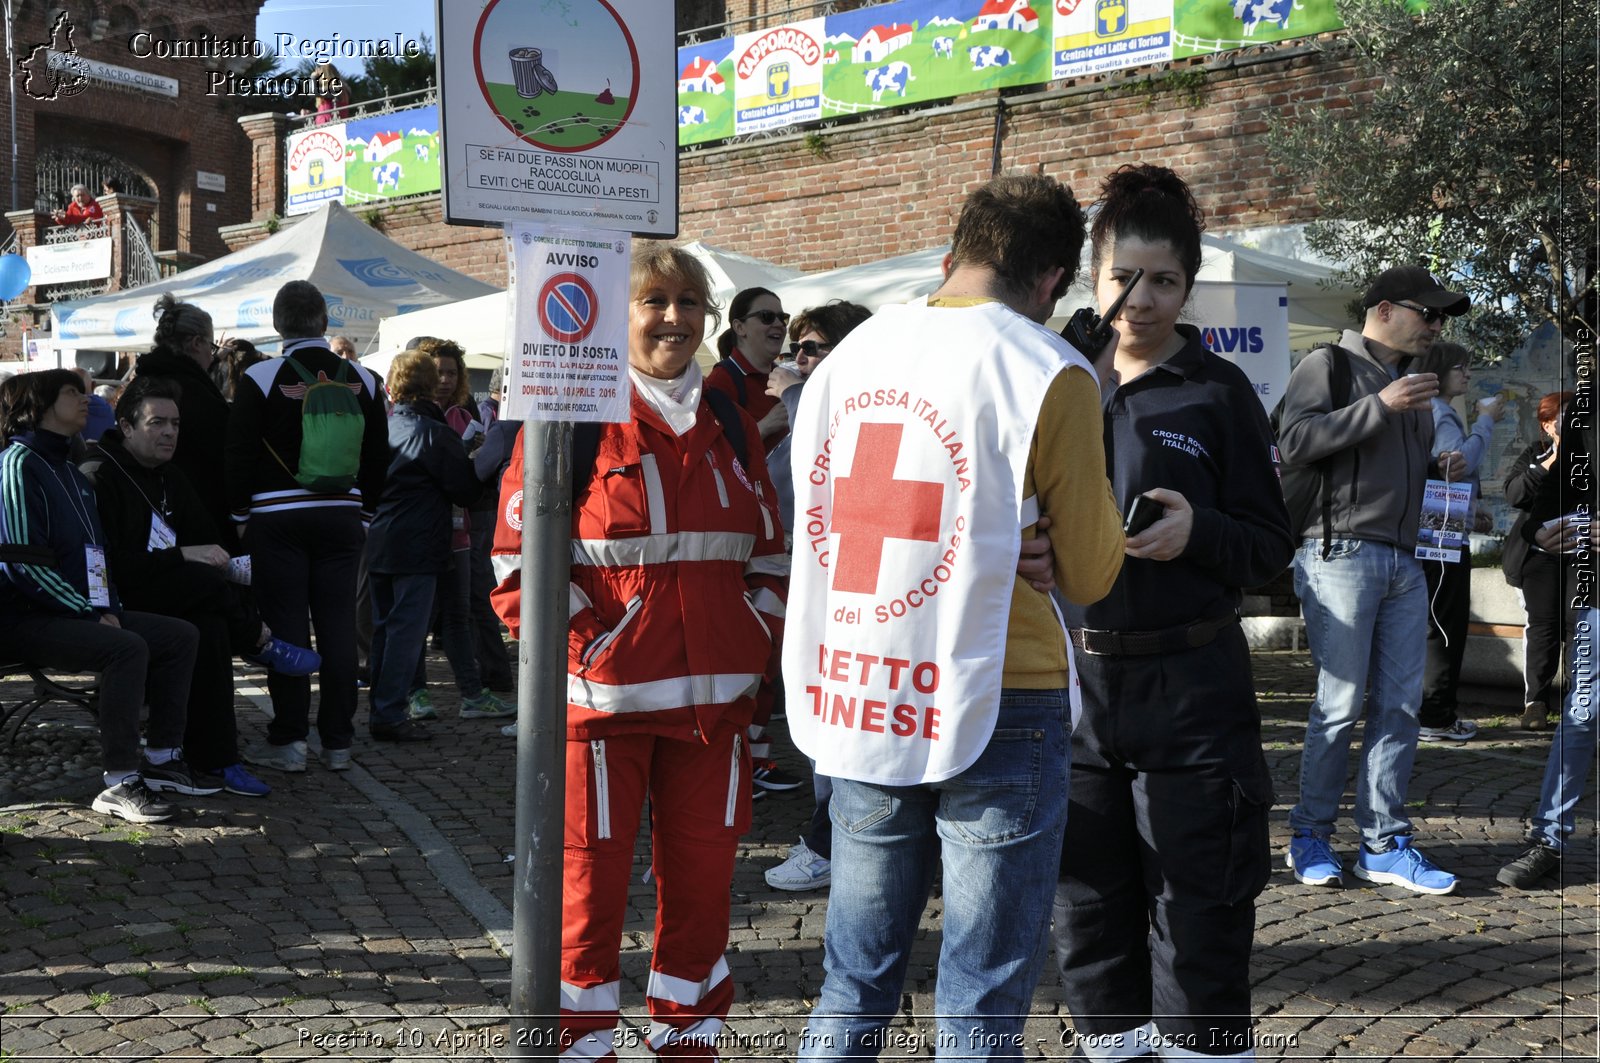 Pecetto 10 Aprile 2016 - 35 Camminata fra i ciliegi in fiore - Croce Rossa Italiana- Comitato Regionale del Piemonte